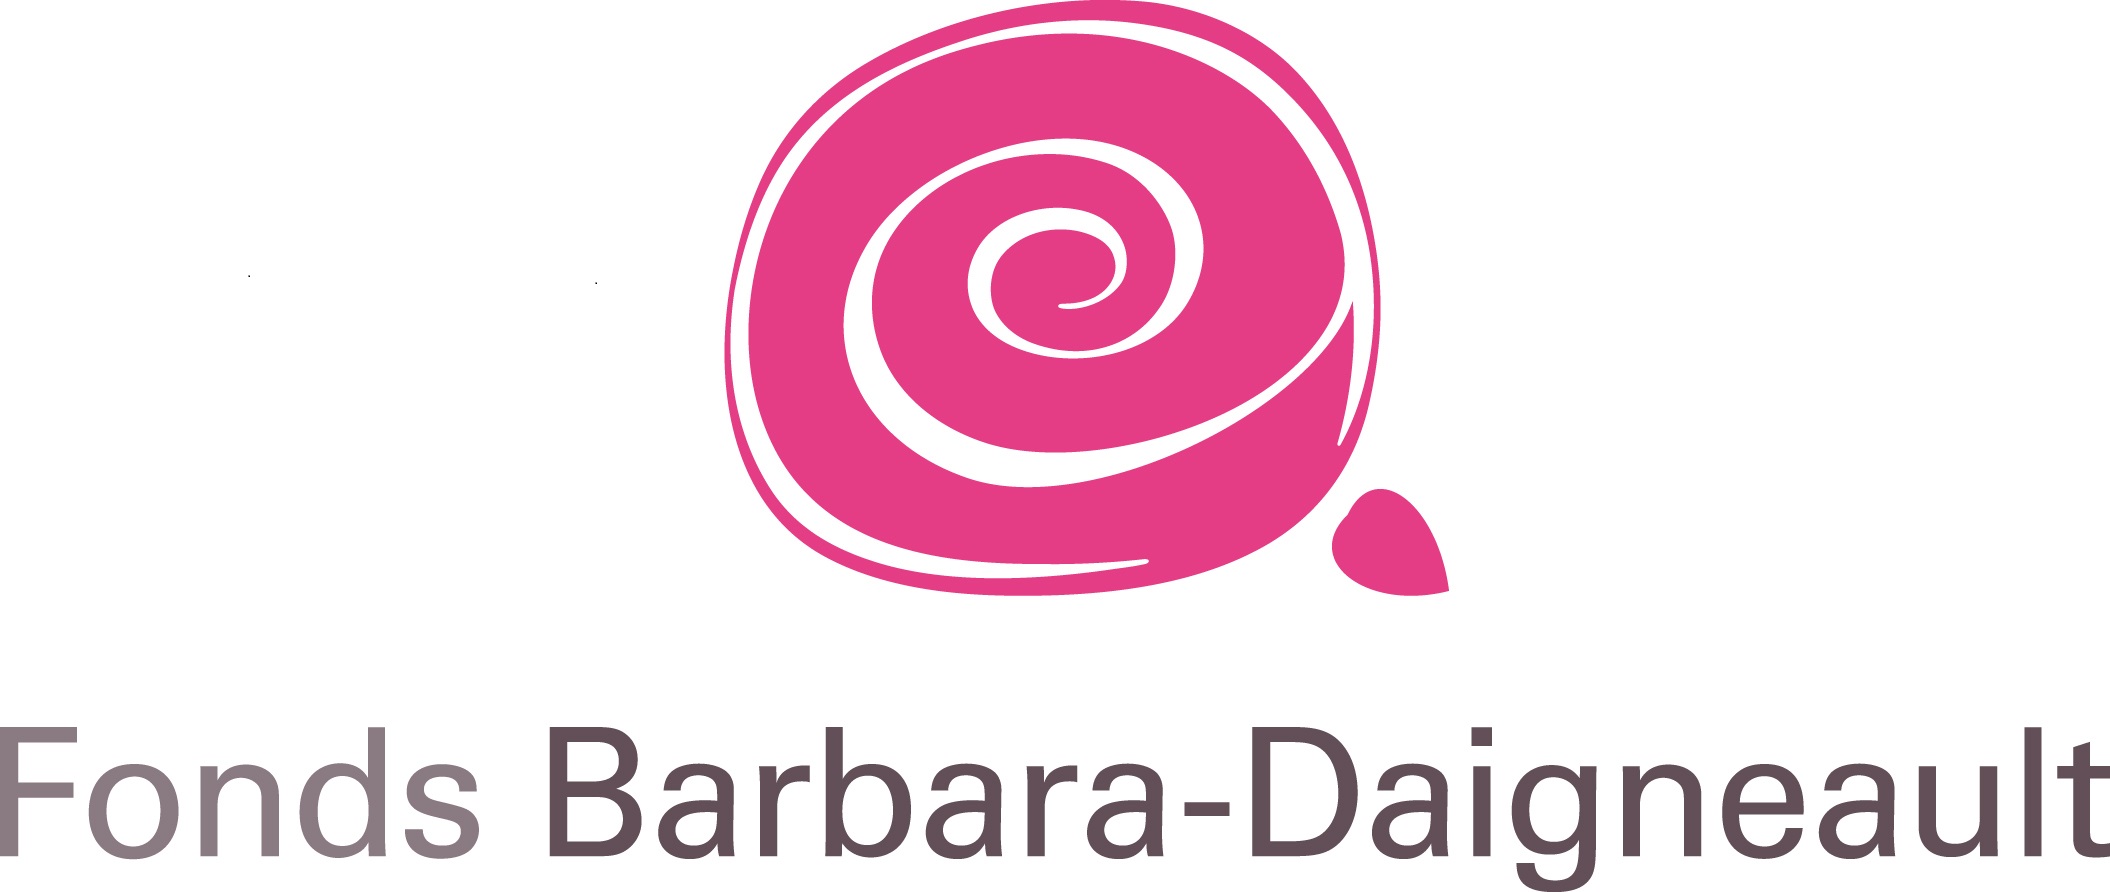 Logo Fonds Barbara-Daigneault